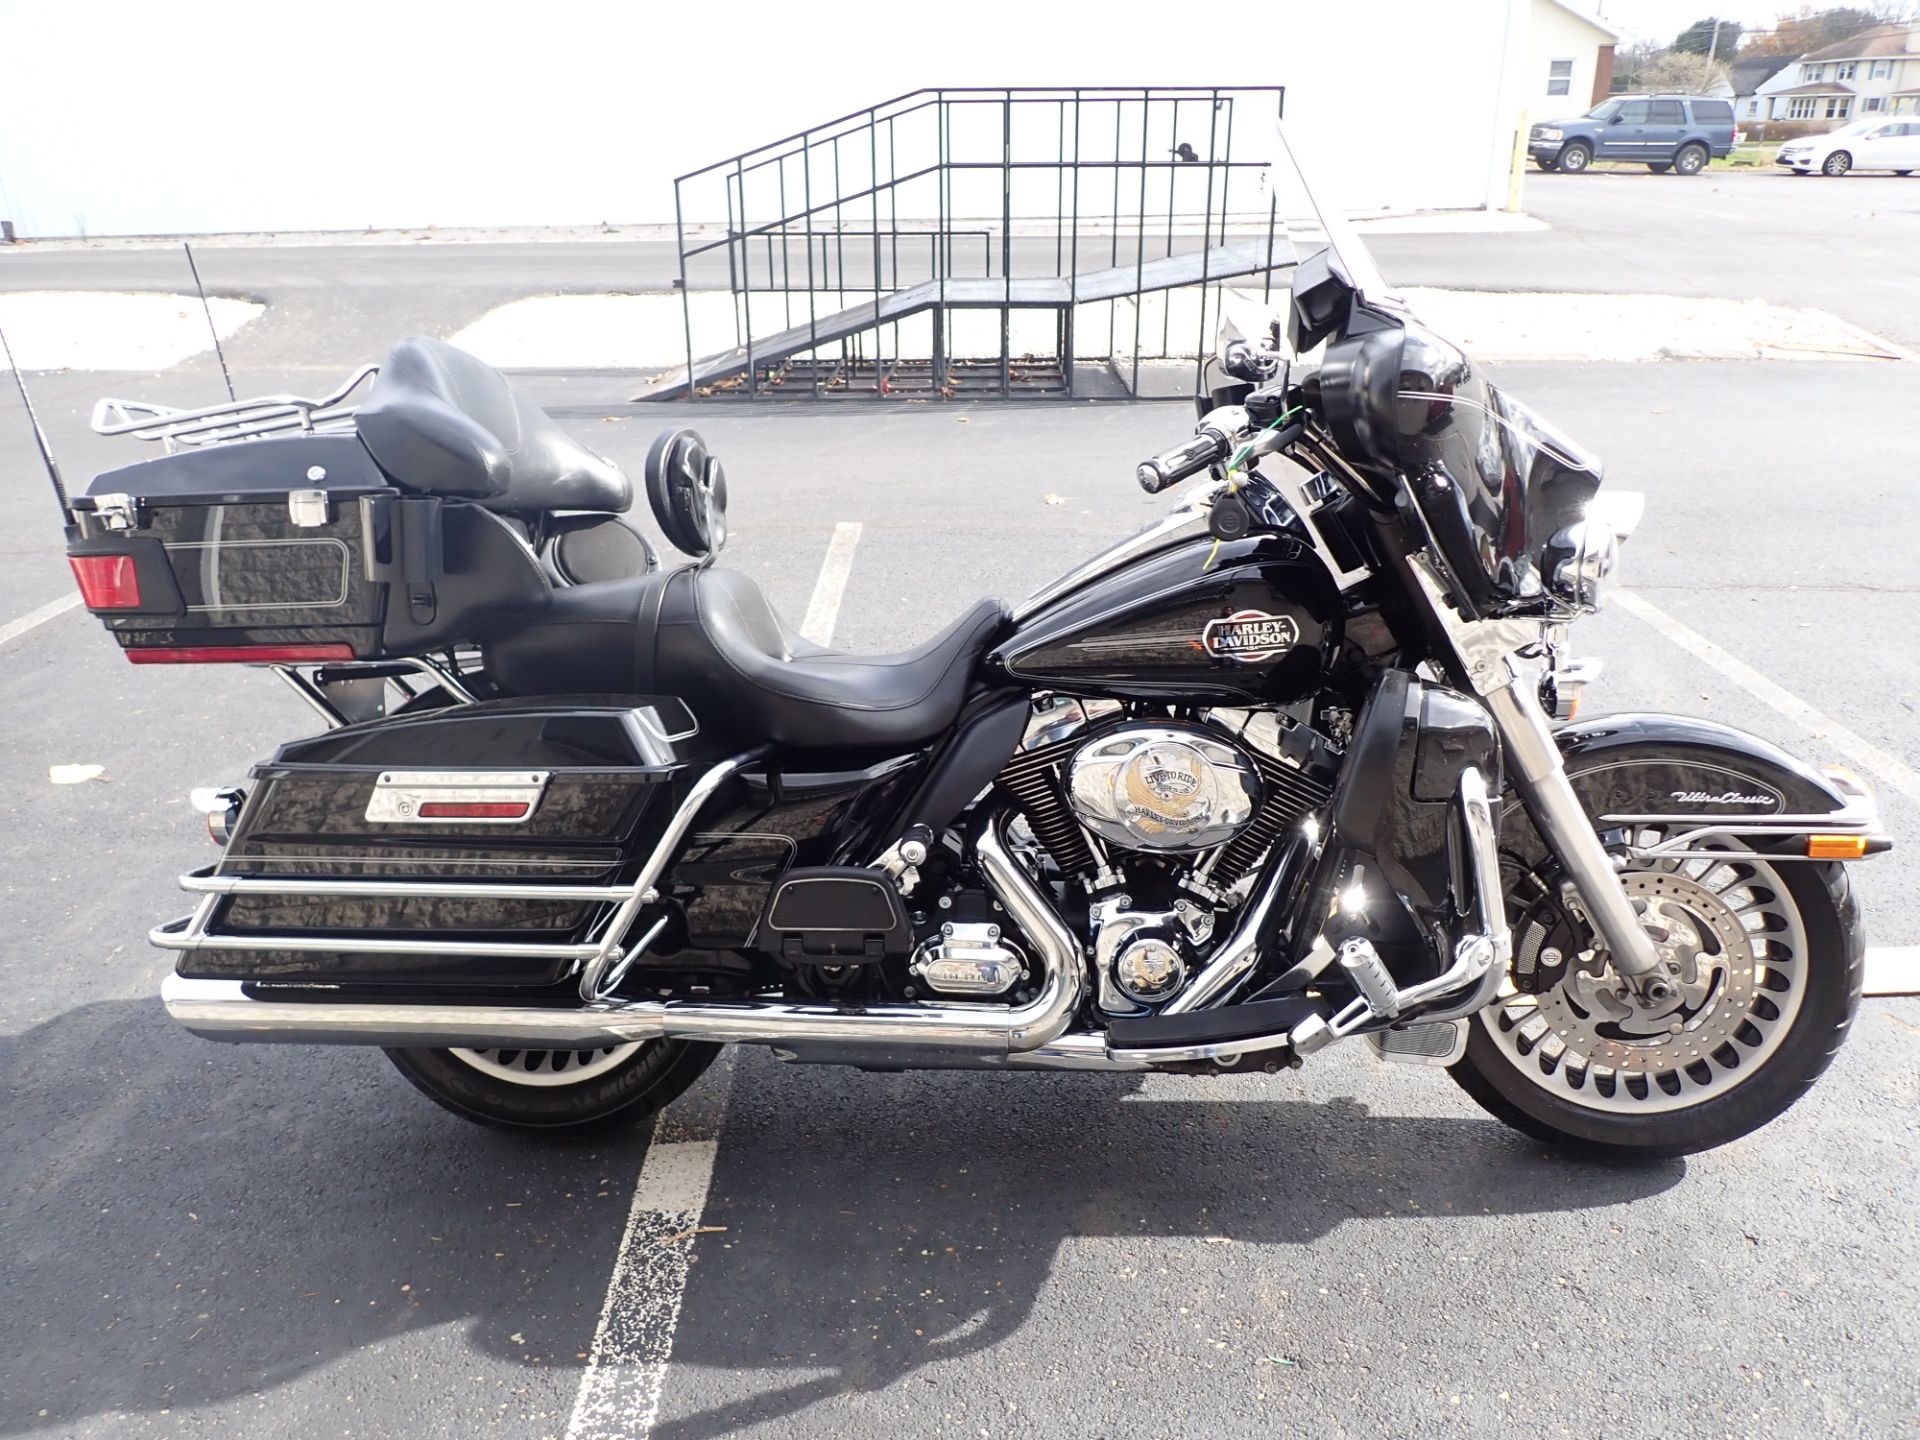 2011 Harley-Davidson Ultra Classic® Electra Glide® in Massillon, Ohio - Photo 1